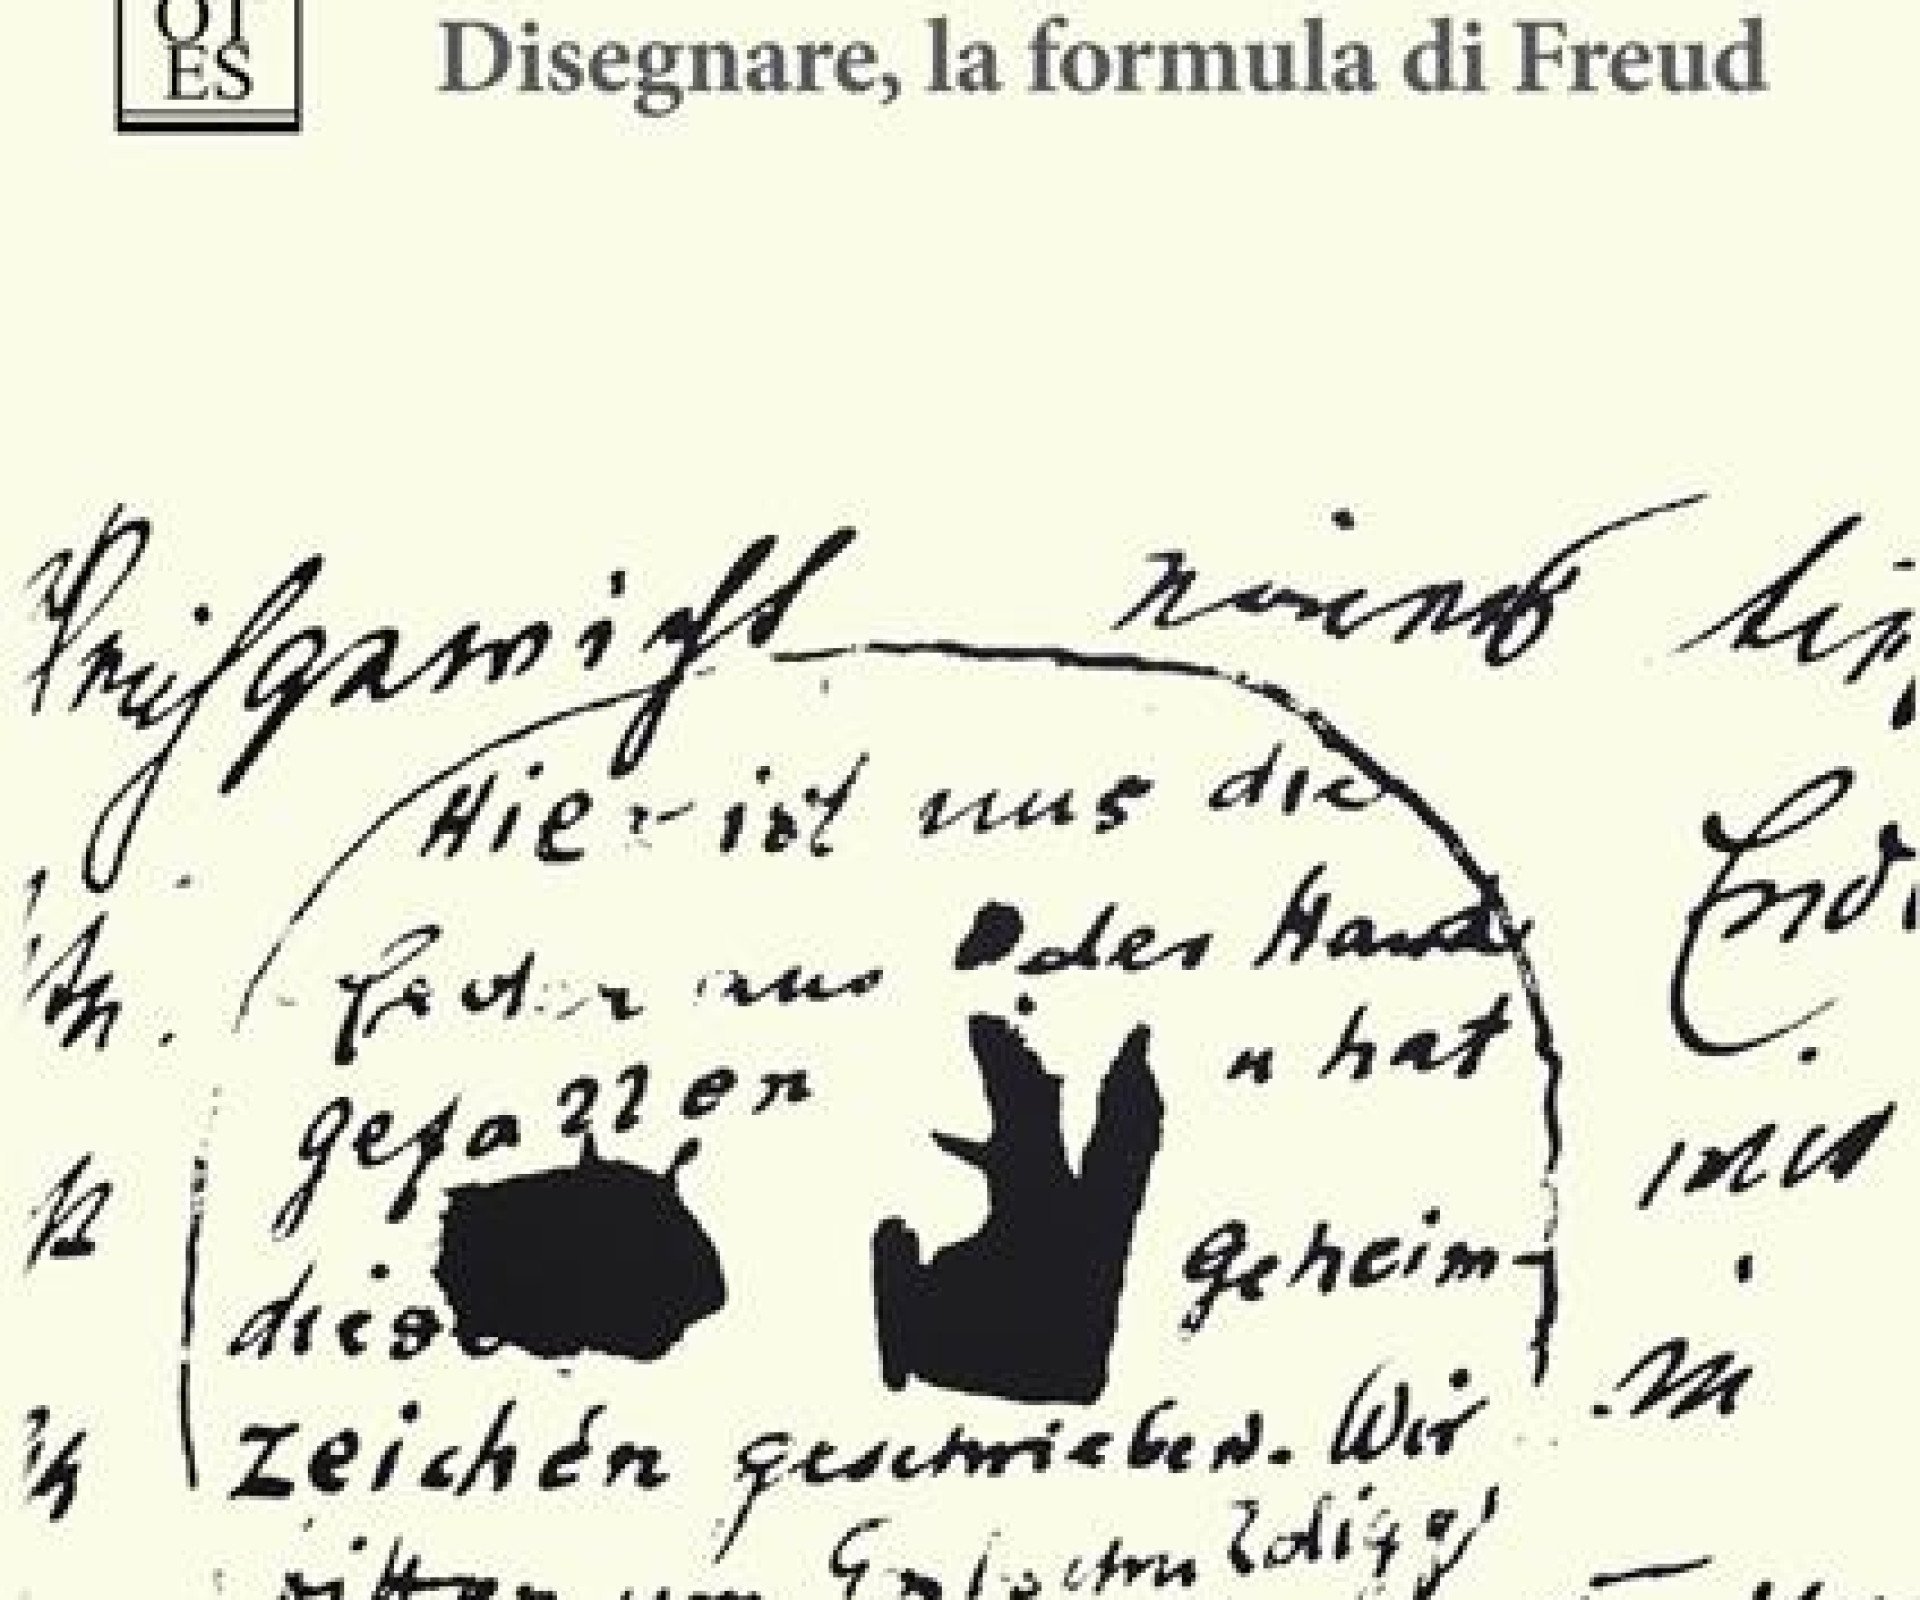 Il mistero del segno tracciato in un foglio: “Disegnare, la formula di Freud” di G. Solla.  Recensione di Marcella Cara